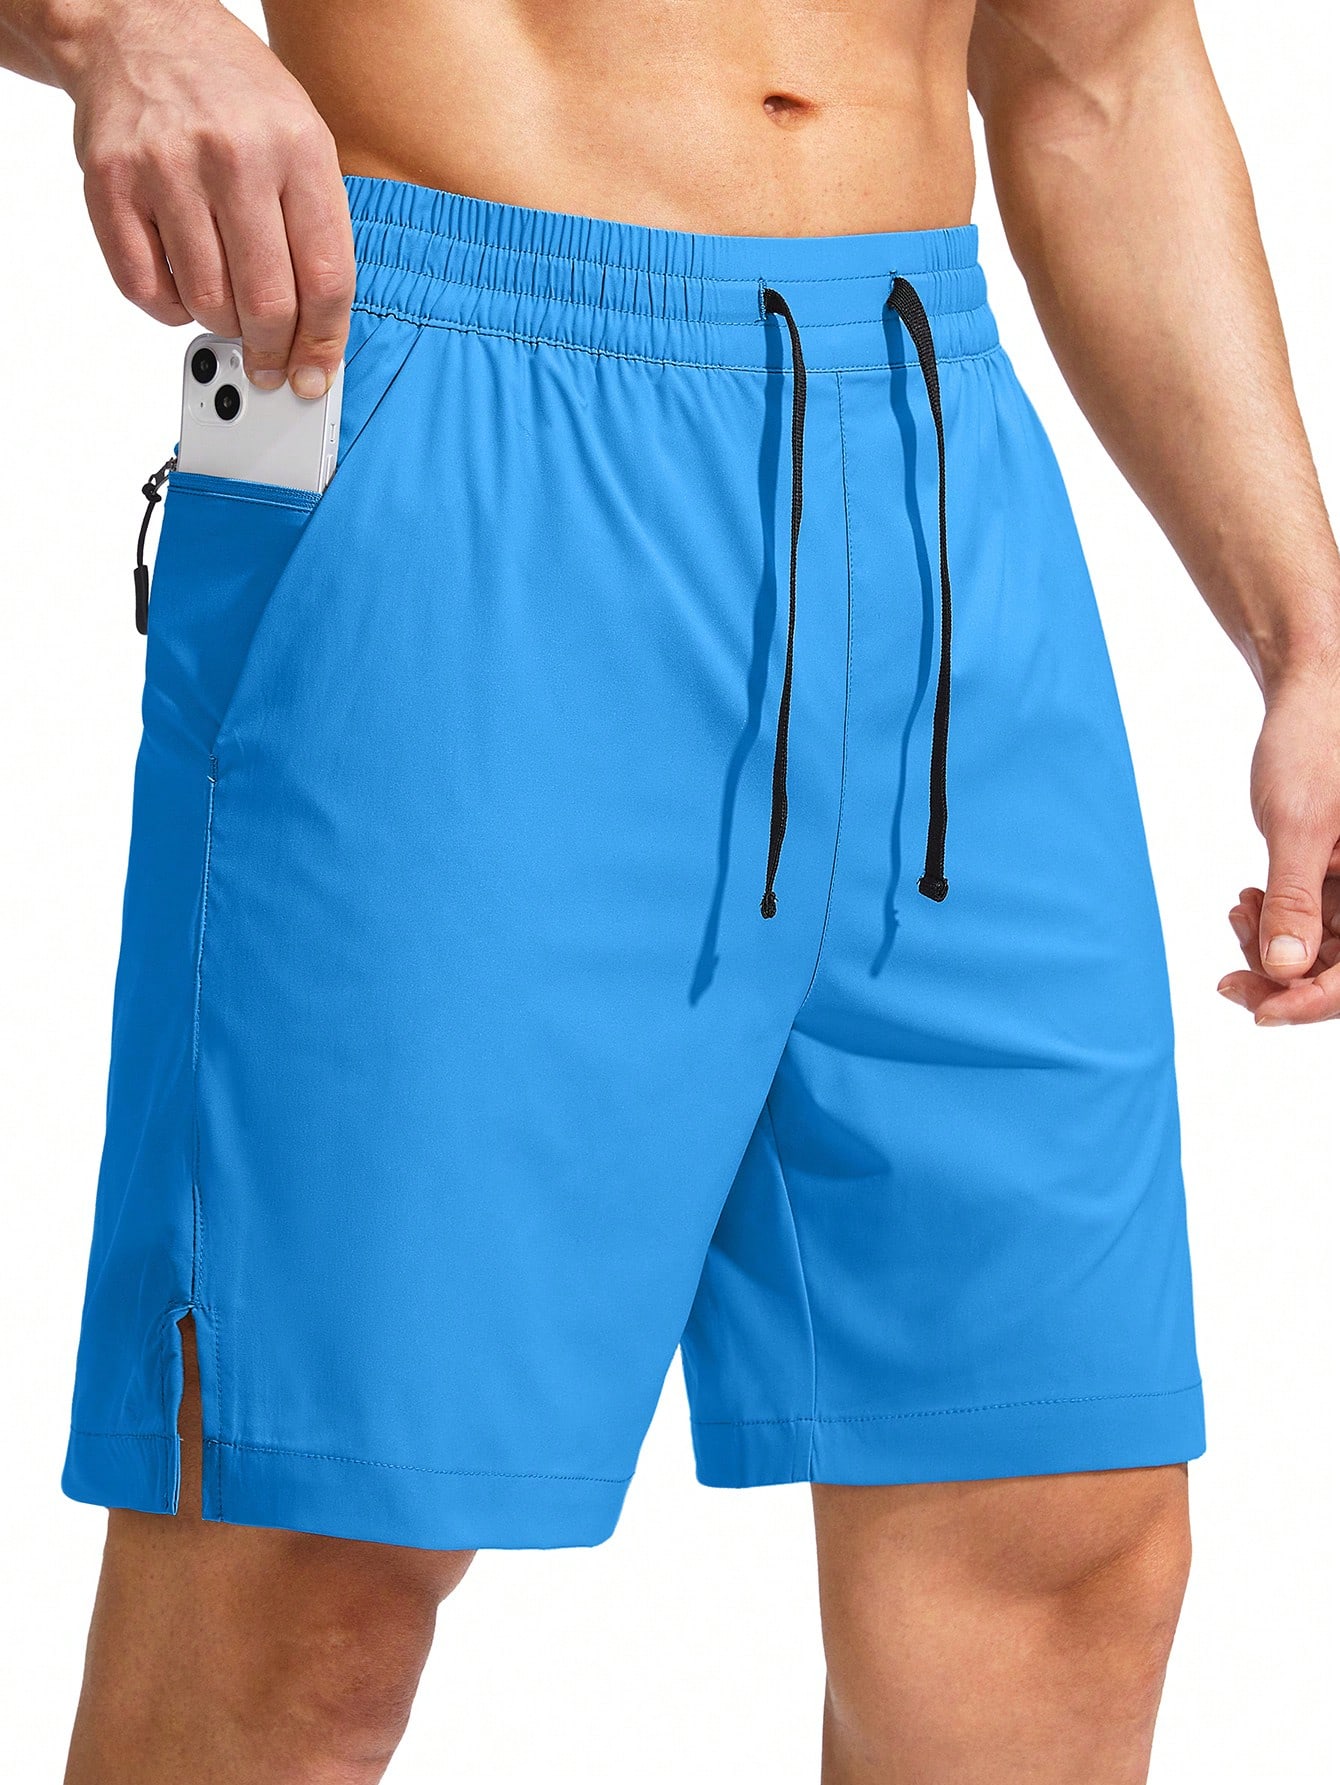 G Gradual G Gradual Мужские плавки Быстросохнущий купальный костюм Пляжные шорты для мужчин с карманами на молнии и сетчатой ​​подкладкой Серые шорты, синий фото